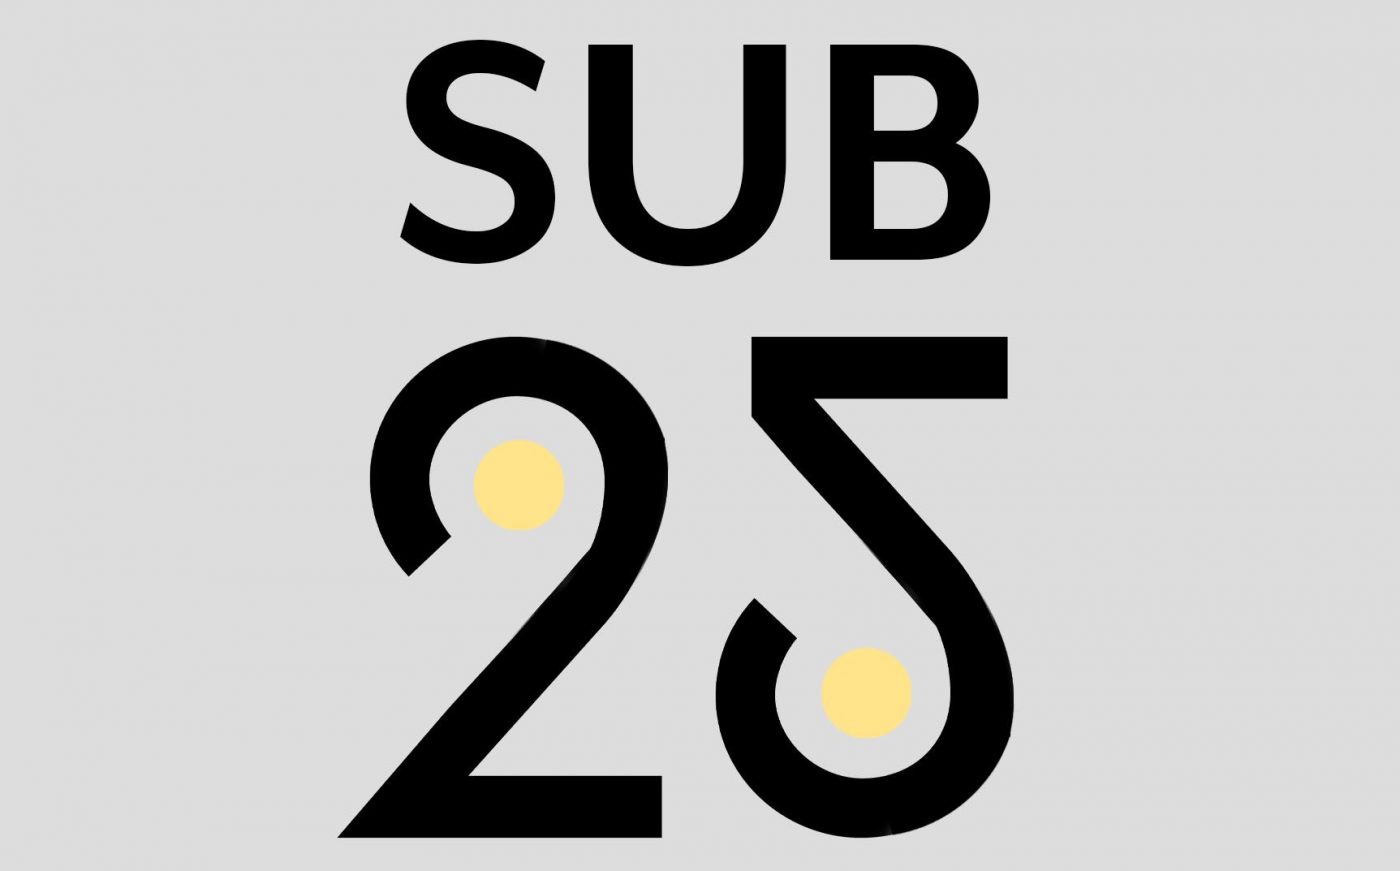 21distritos sub25